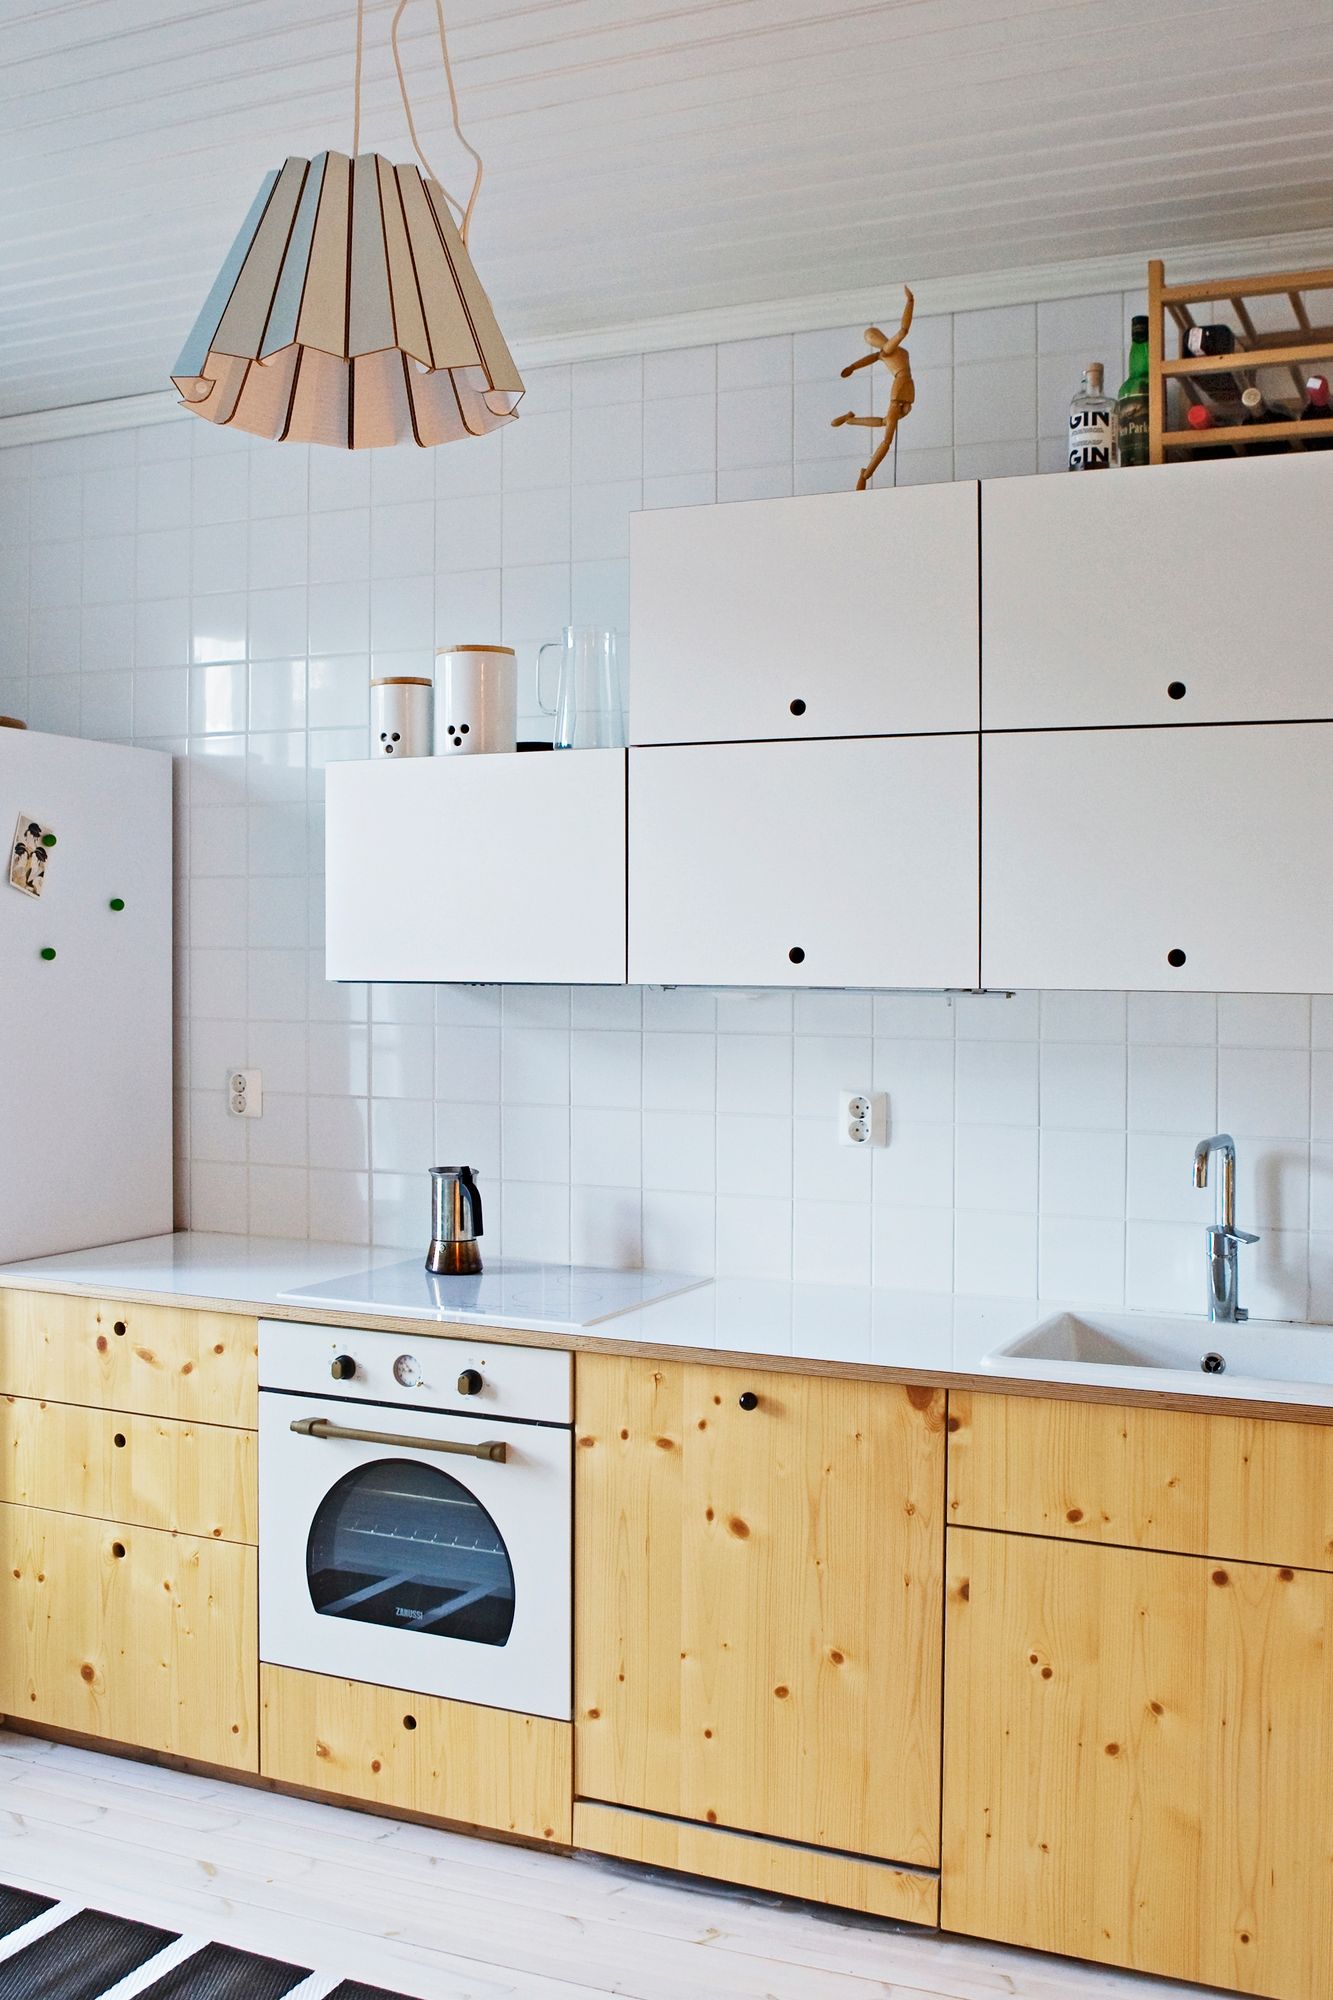 Kun laatat vie kattoon asti keittiön seinä nivoutuu kokonaisuudeksi, jossa yläkaapistojen sijoittelu on vapaampaa.